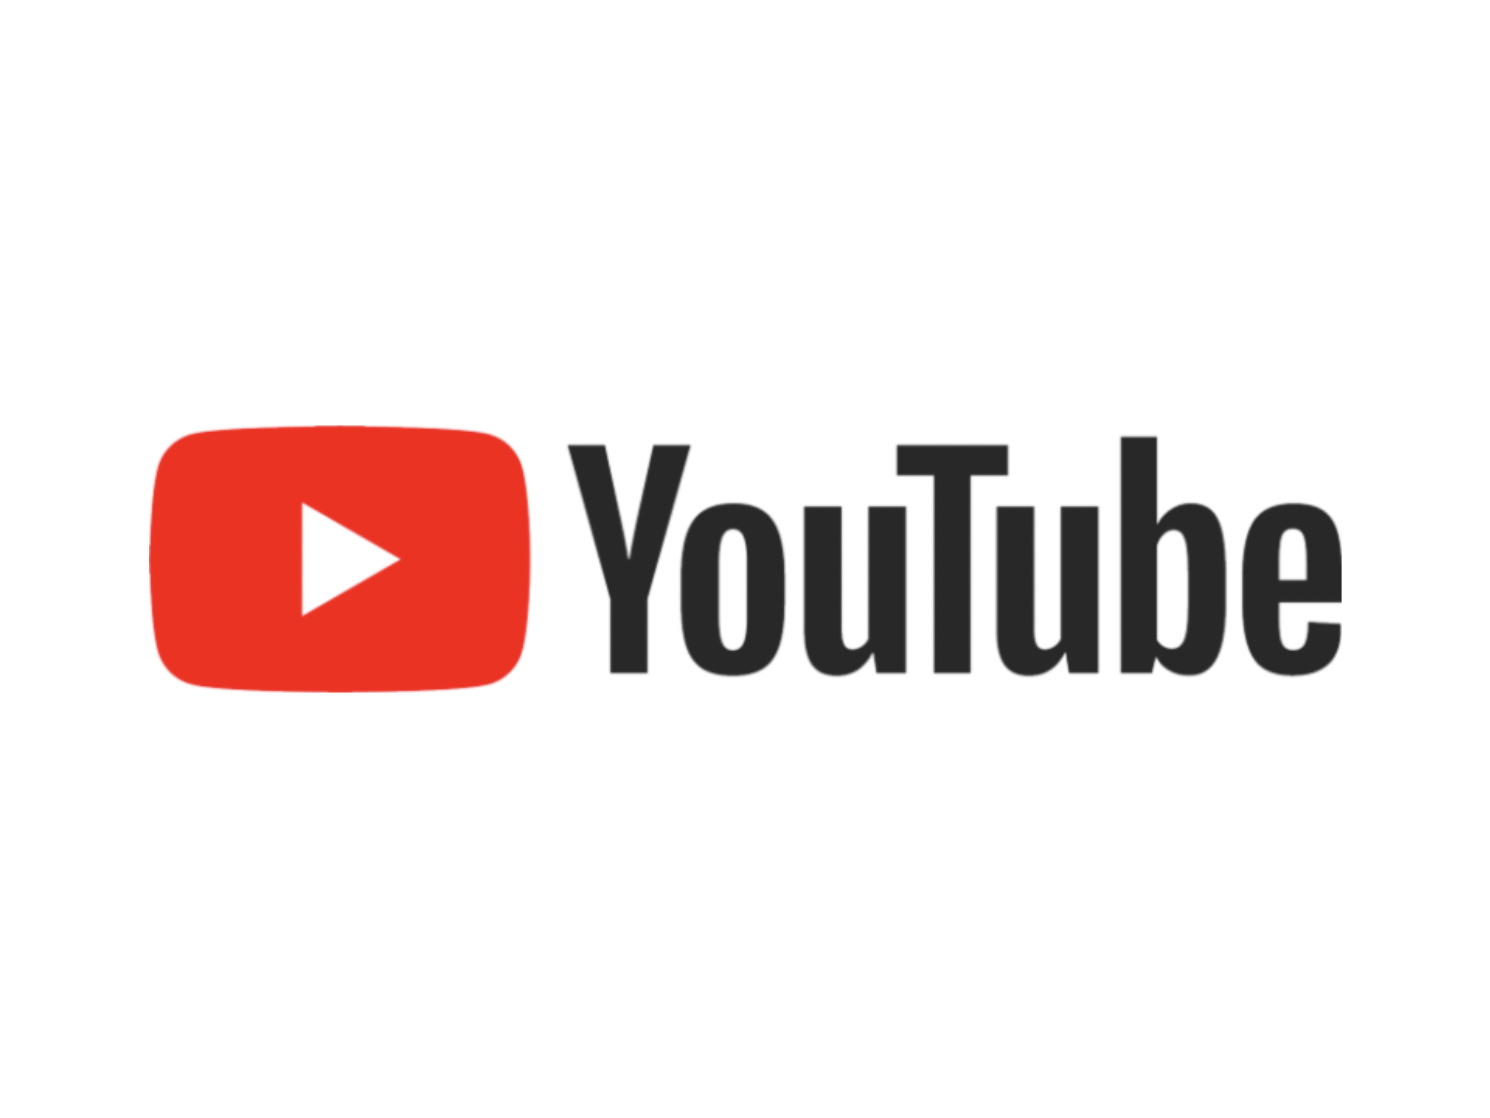 YouTubeからも人員削減を発表。ビジネスサイドで約100人が解雇